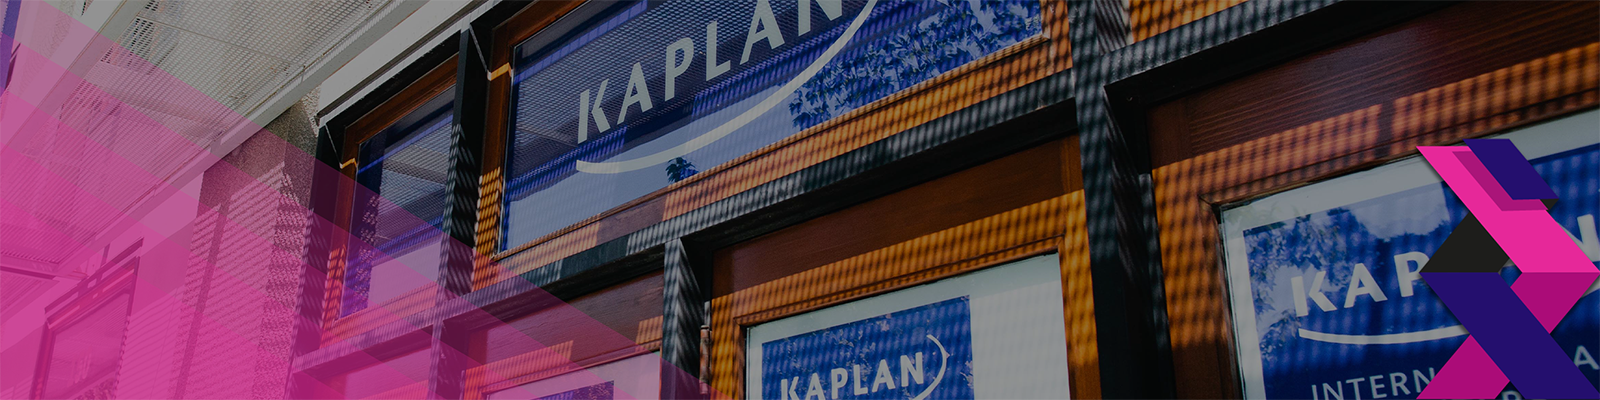 Kaplan International Languages - Santa Barbara görseli